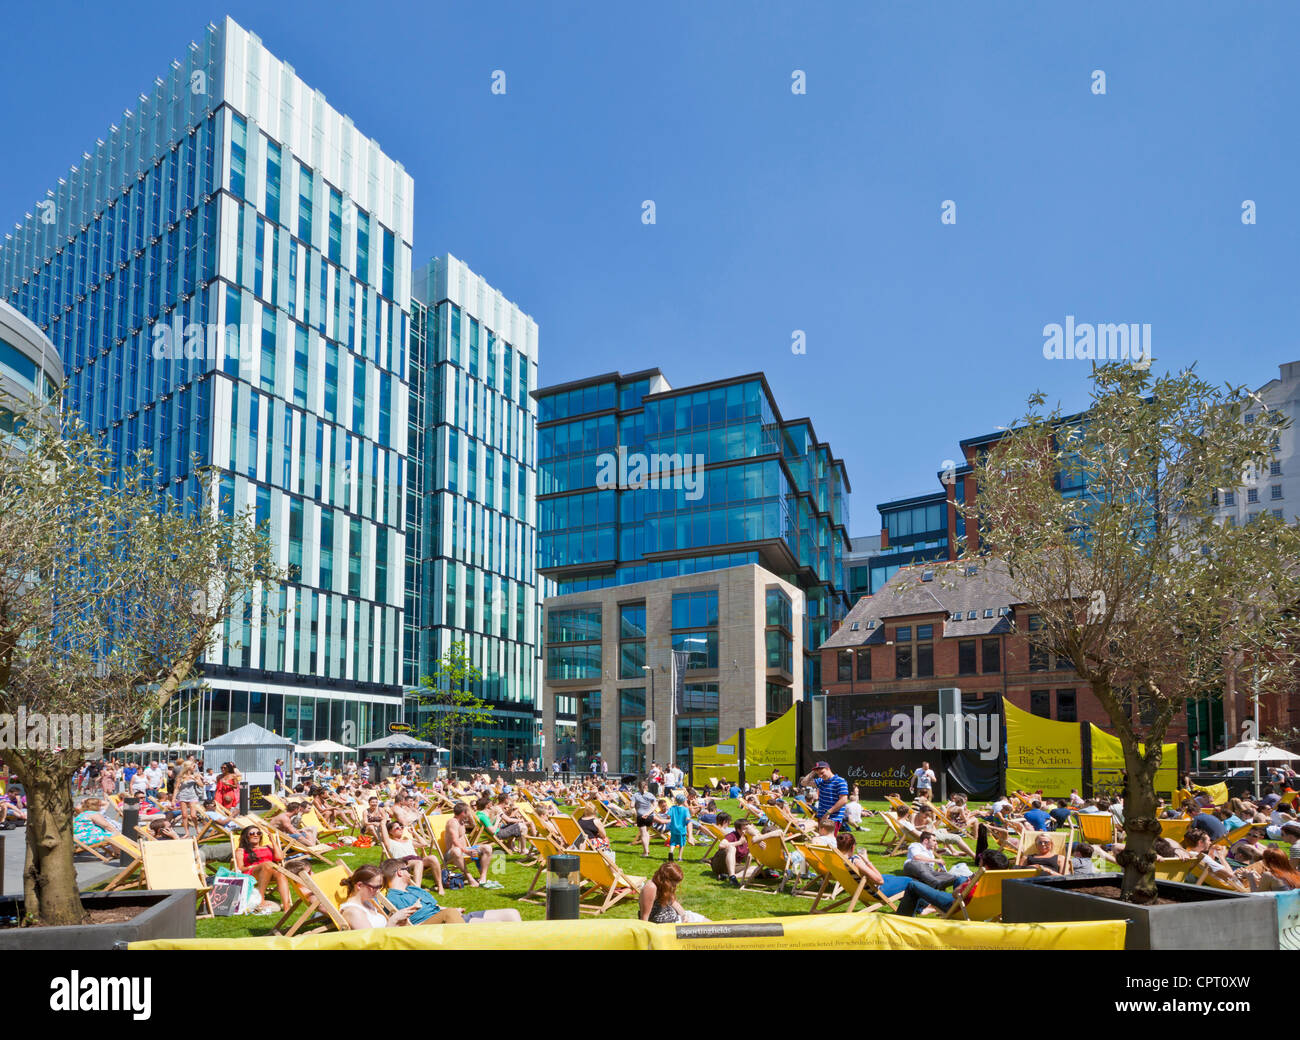 Les foules appréciant la chaleur et le soleil dans le centre-ville Spinningfields Greater Manchester England UK GB EU Europe Banque D'Images